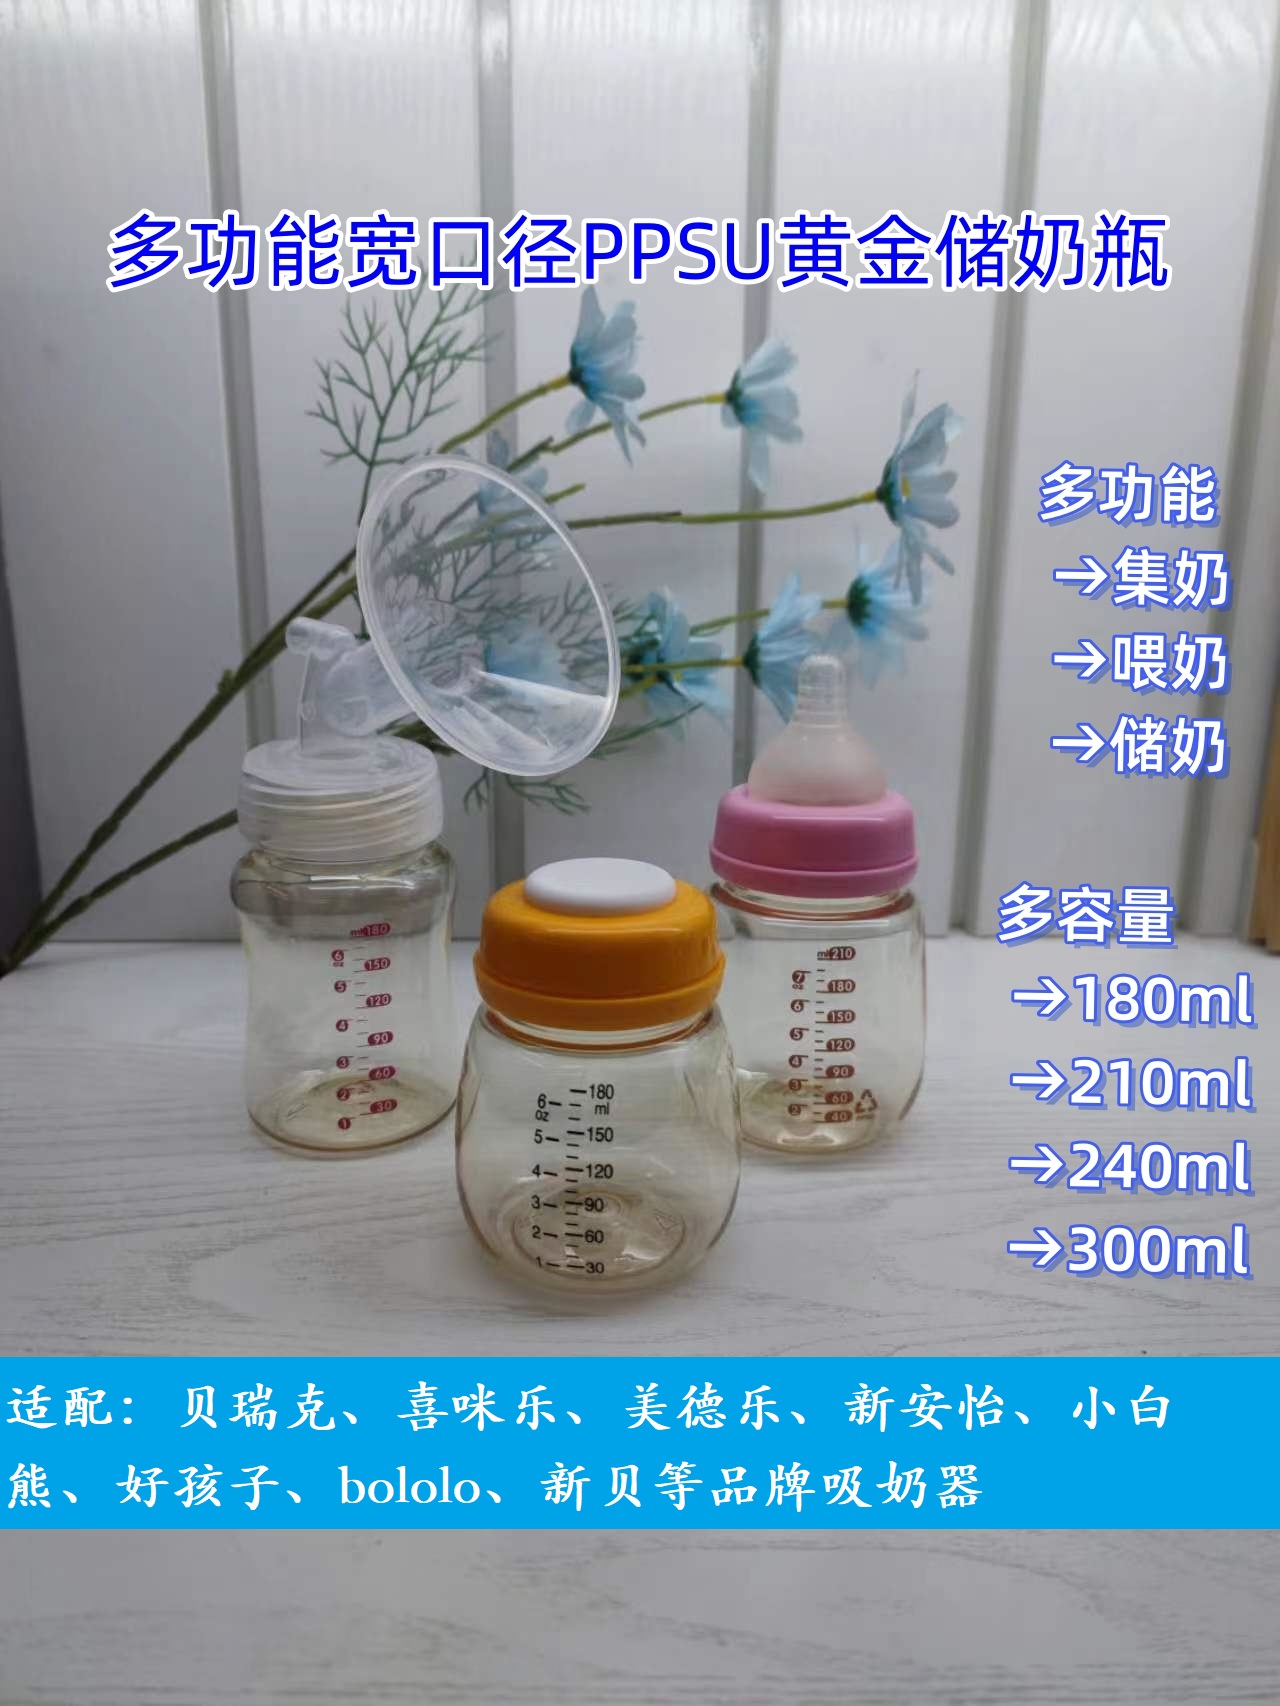 婴幼儿奶瓶宽口径PPSU储奶集乳多容量可选通用贝瑞克喜咪乐吸奶器